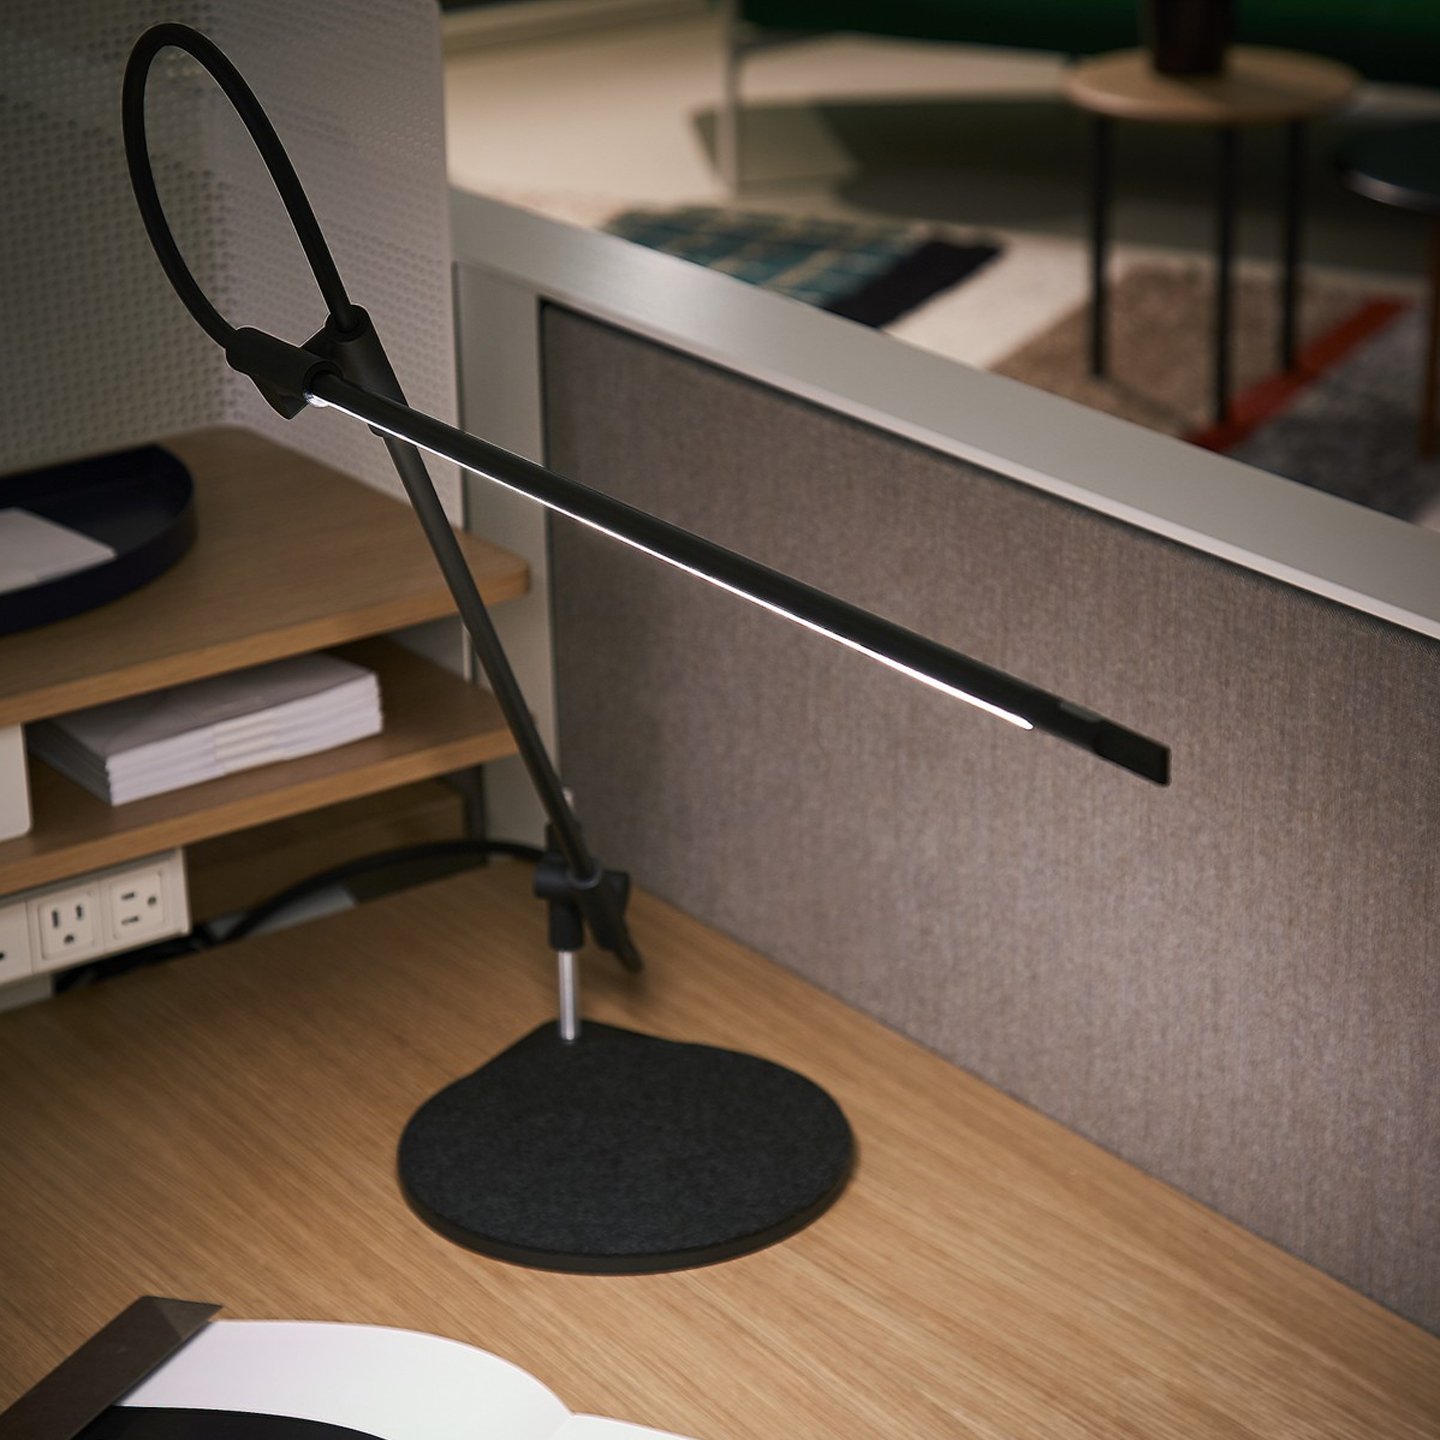 Haworth Superlight lighting in black color on wood desk with grey desk divider